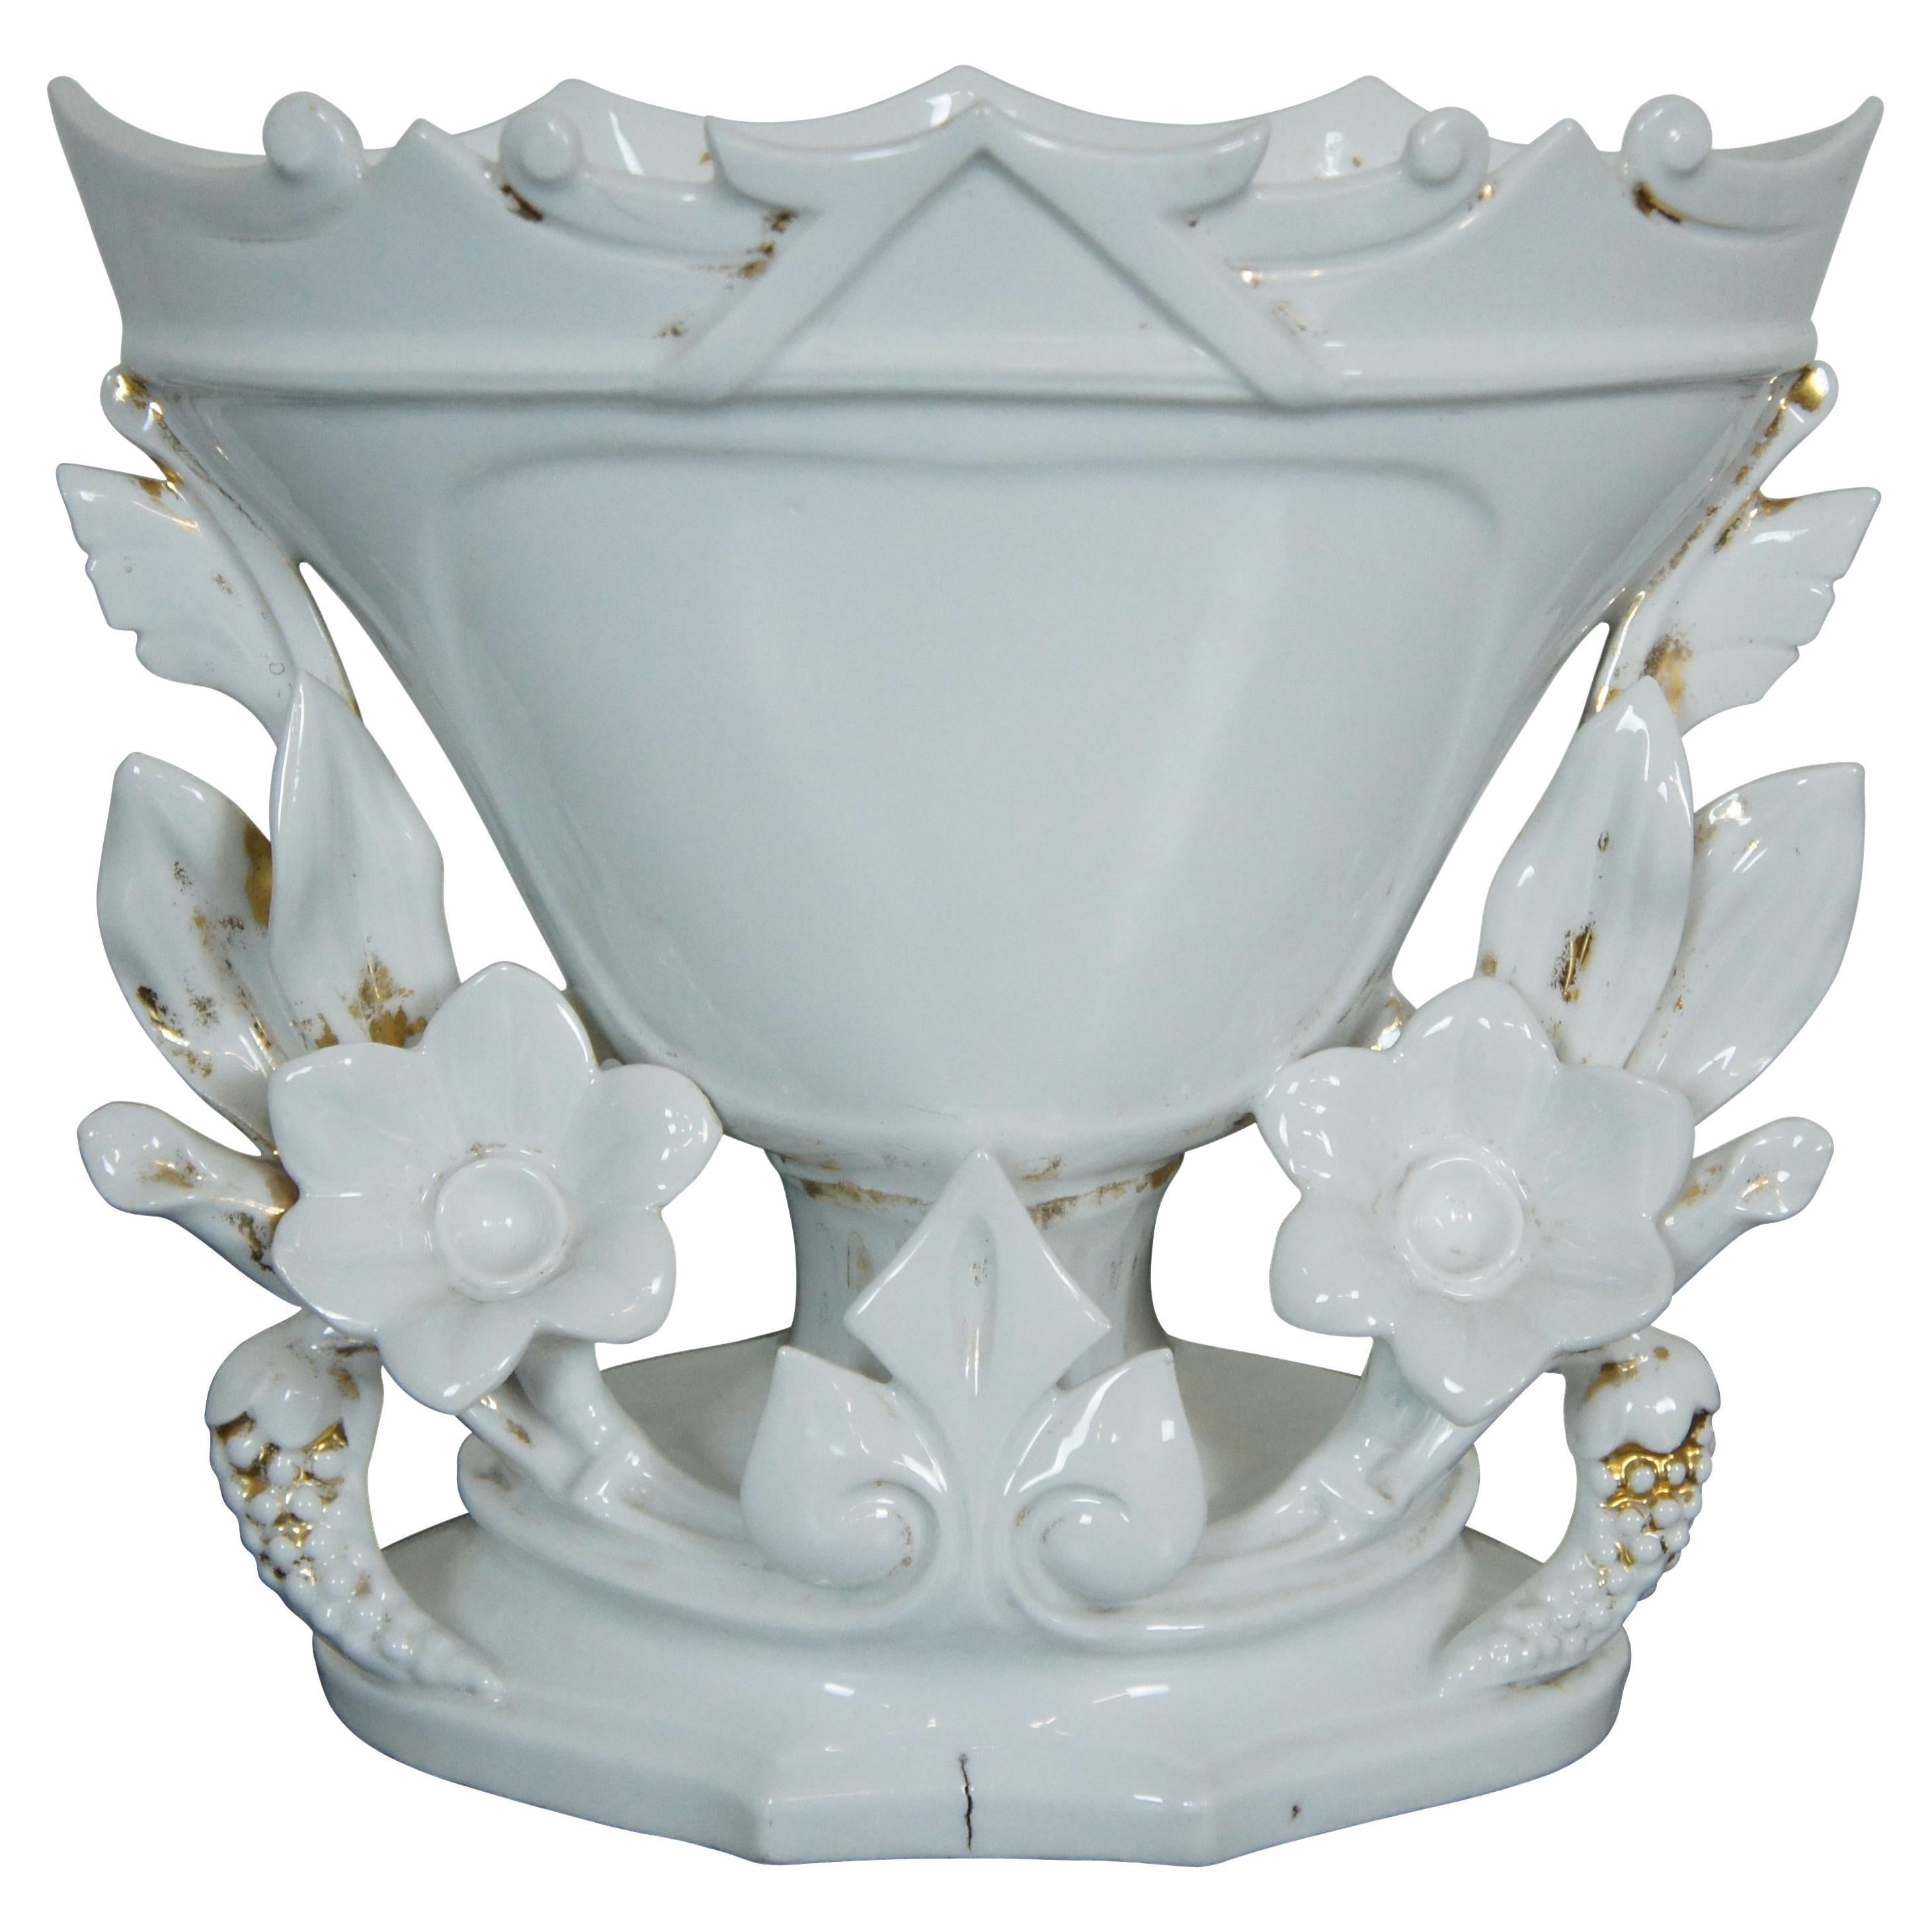 Antique French Vieux Paris Ornate Porcelain Mantel Urn Trophy Flower Vase 10"